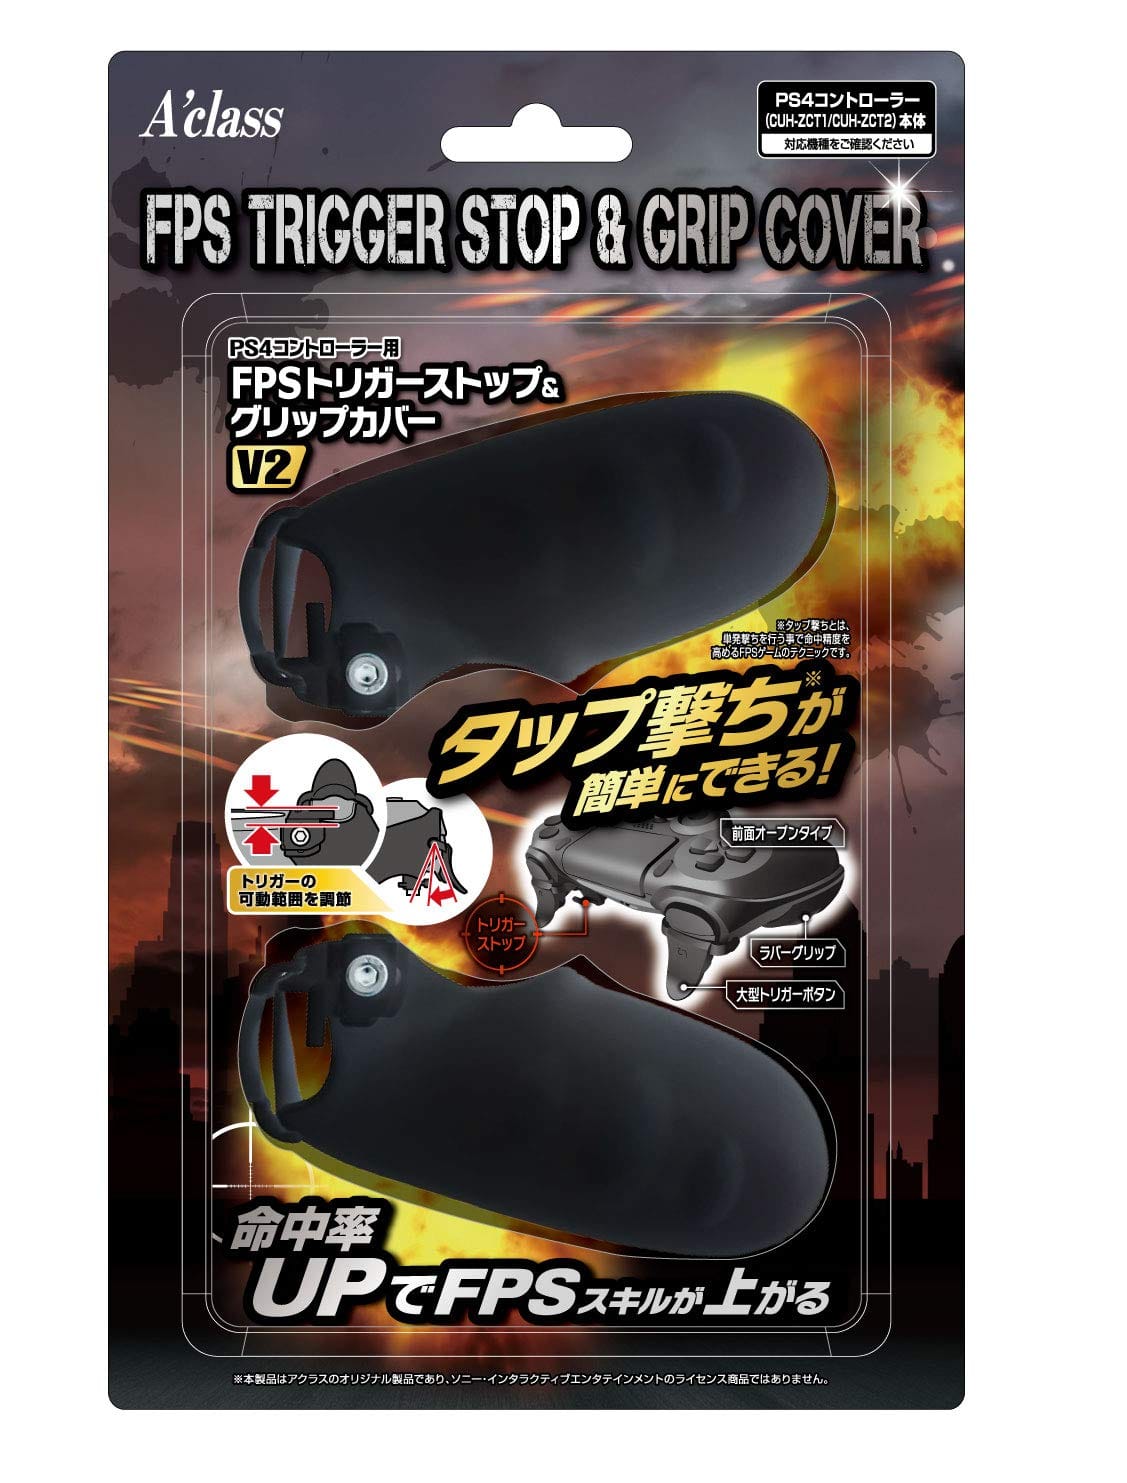 PS4コントローラー用FPSトリガーストップ&グリップカバー V2